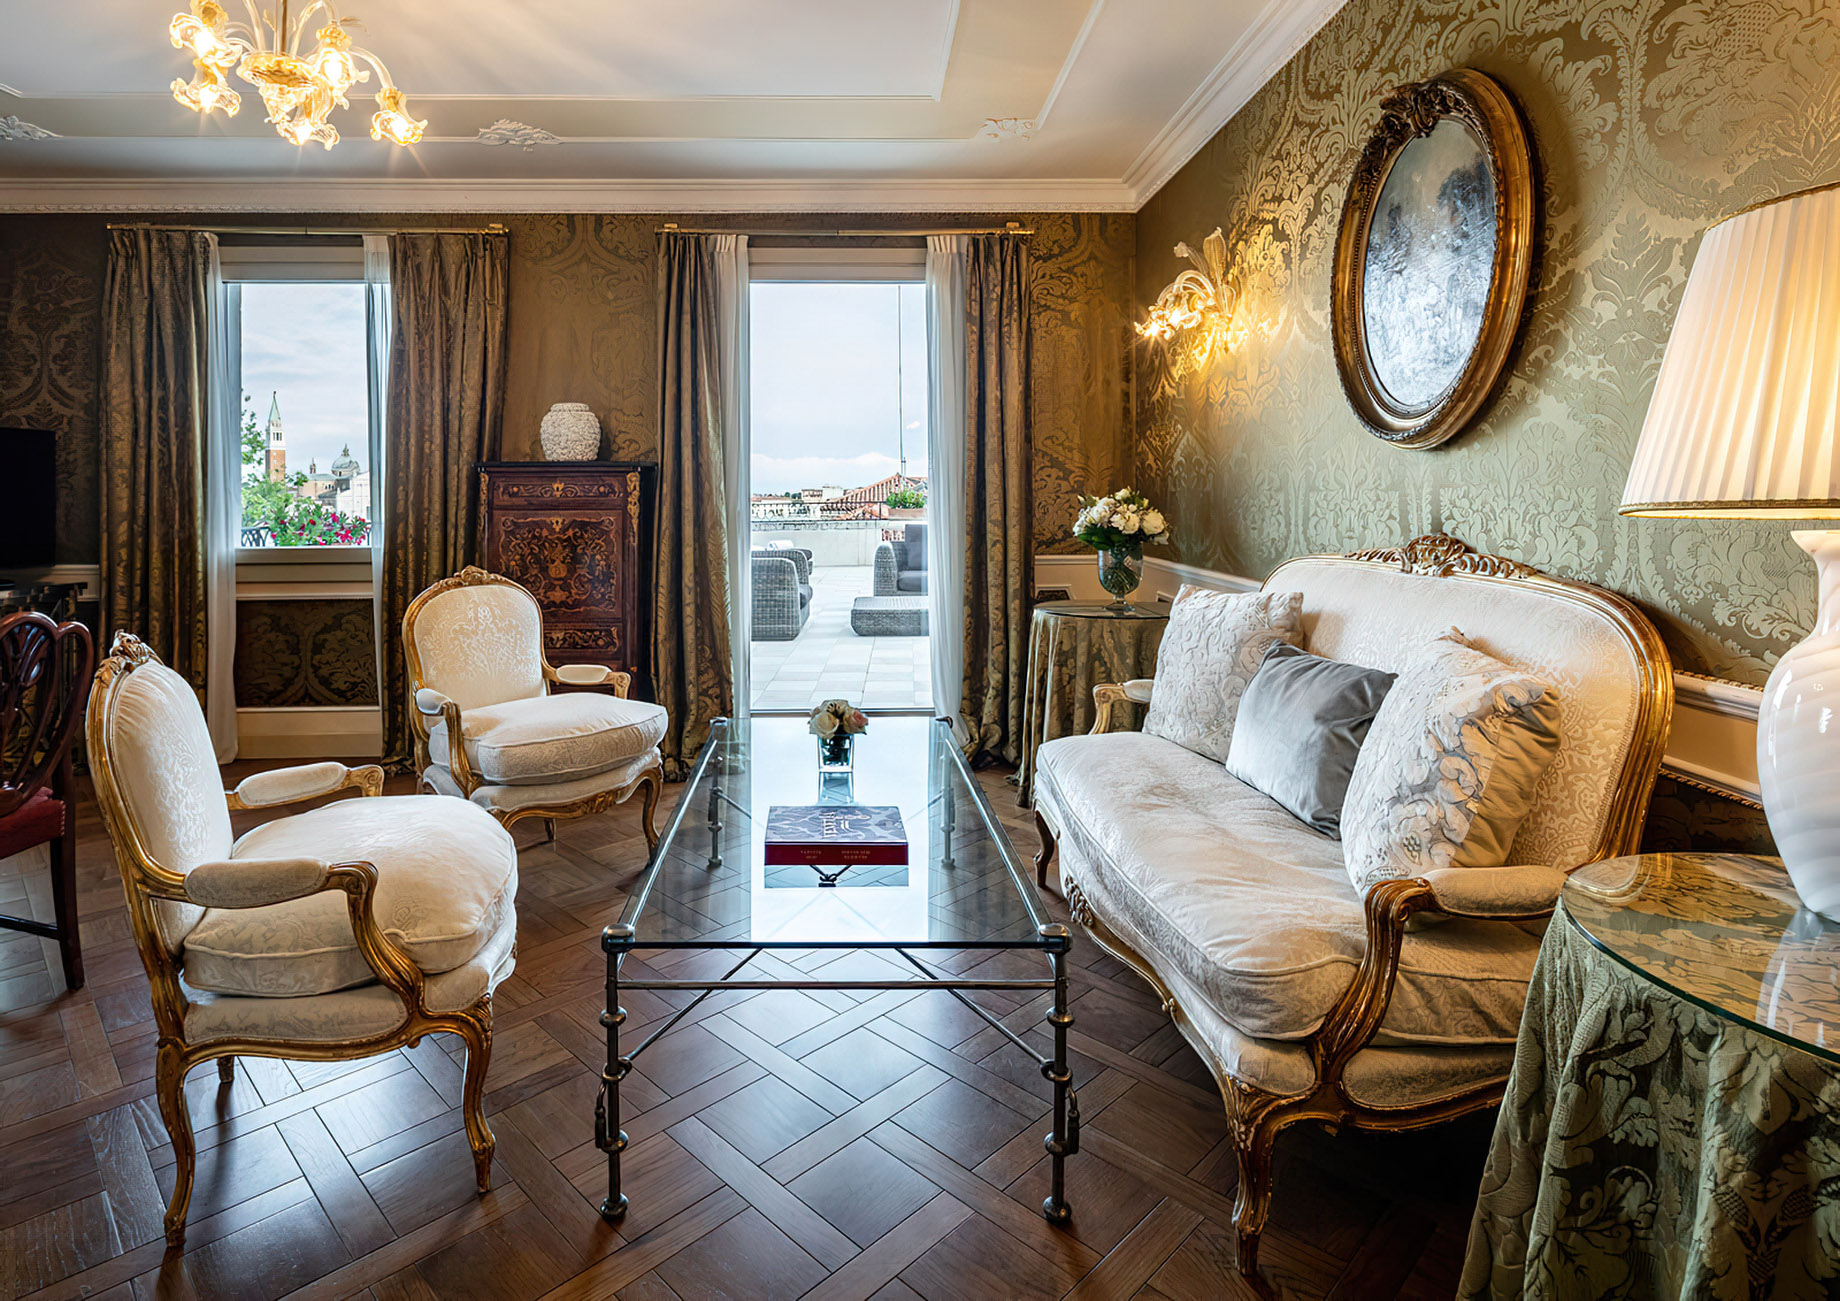 Baglioni Hotel Luna, Venezia – Venice, Italy – Sansovino Lagoon View Suite